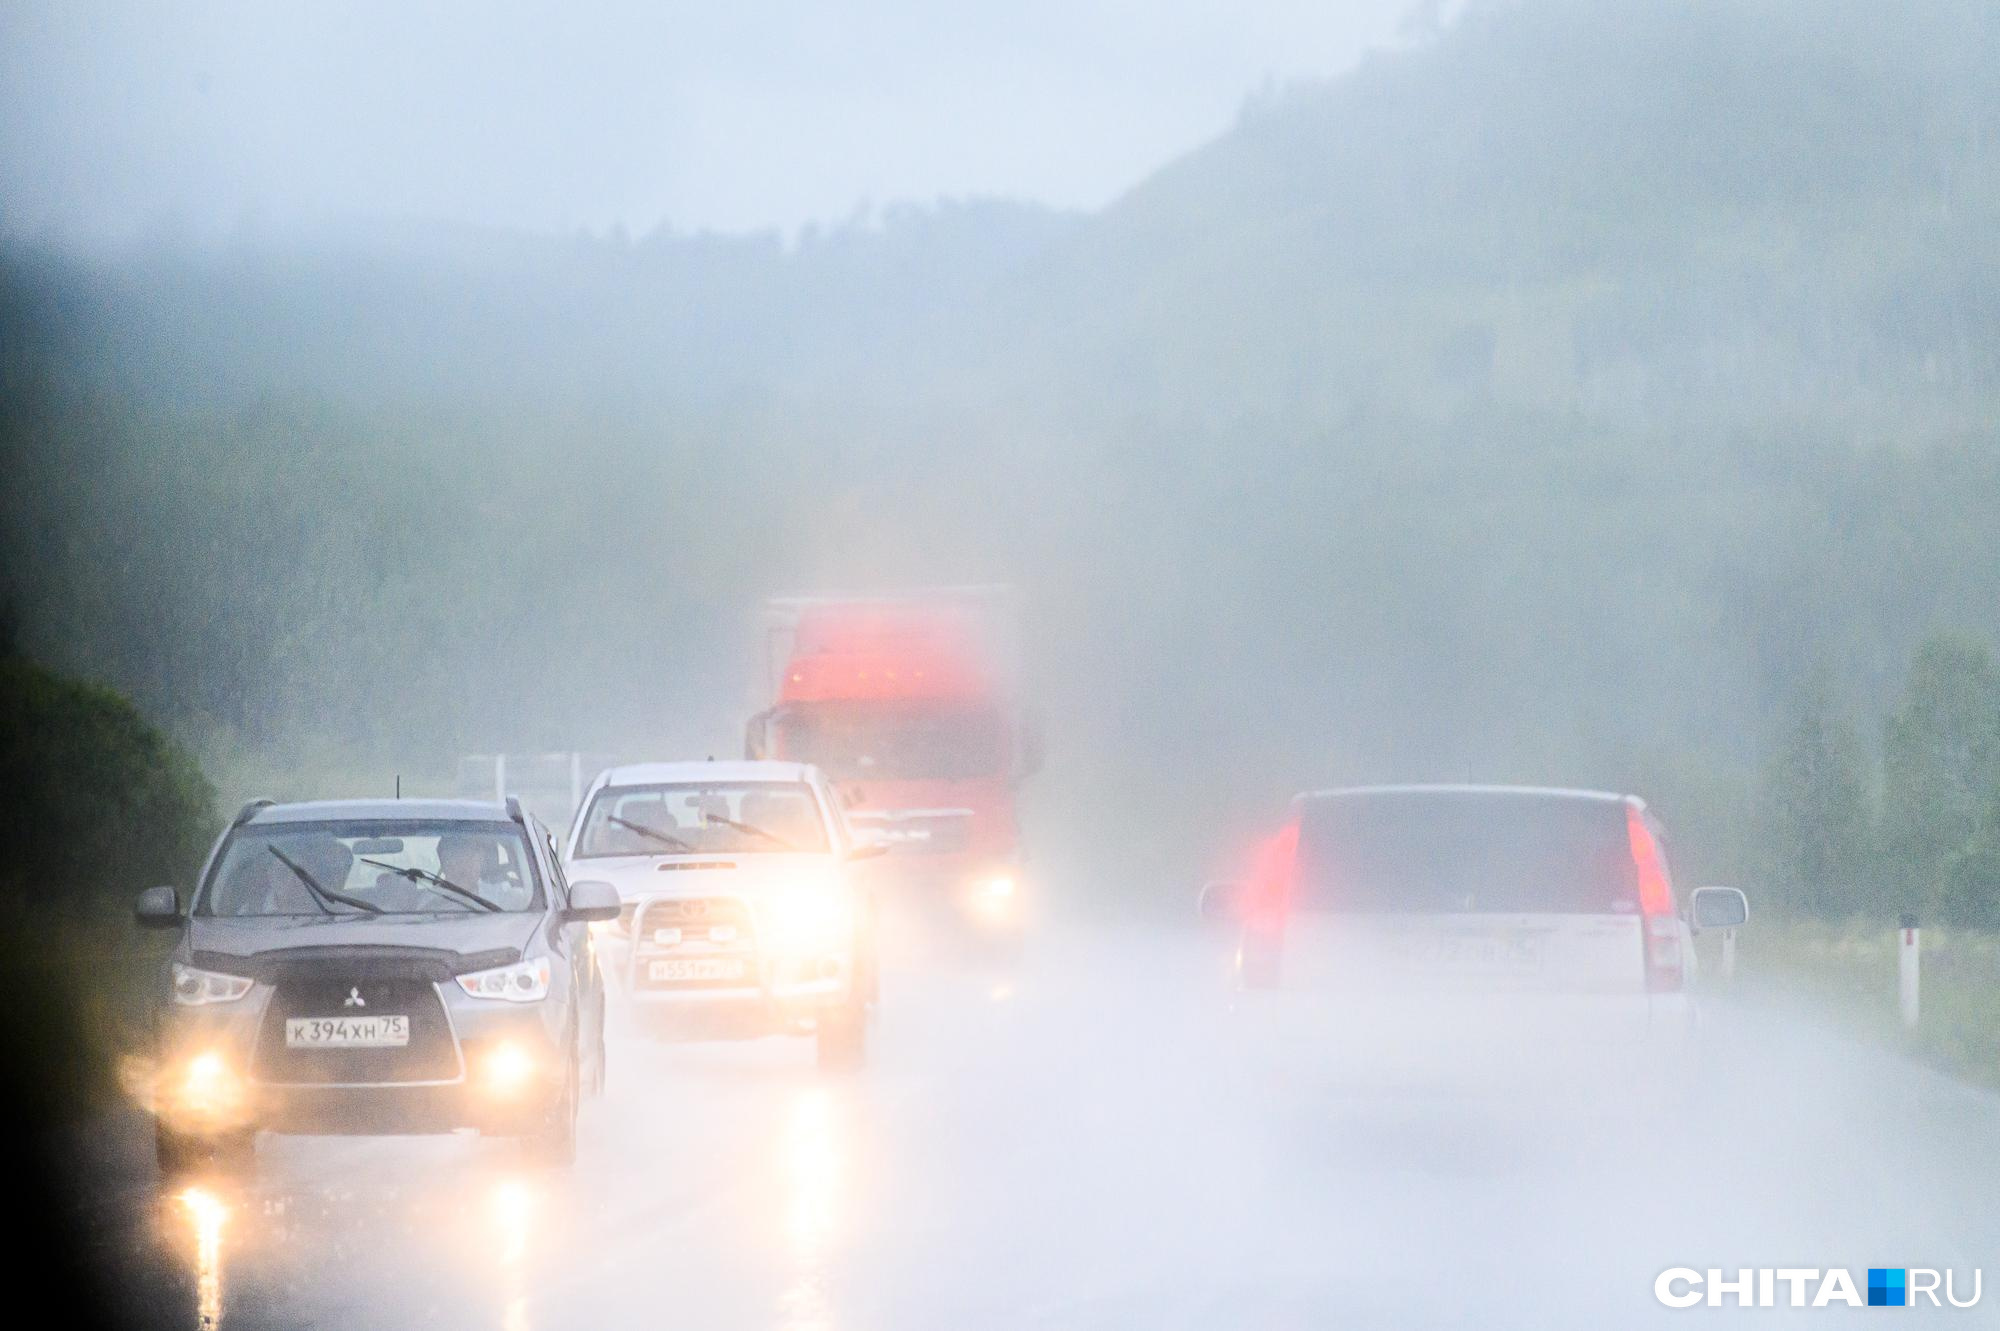 Забайкальцы пожаловались на дорогу после дождей, которая связывает 3 района